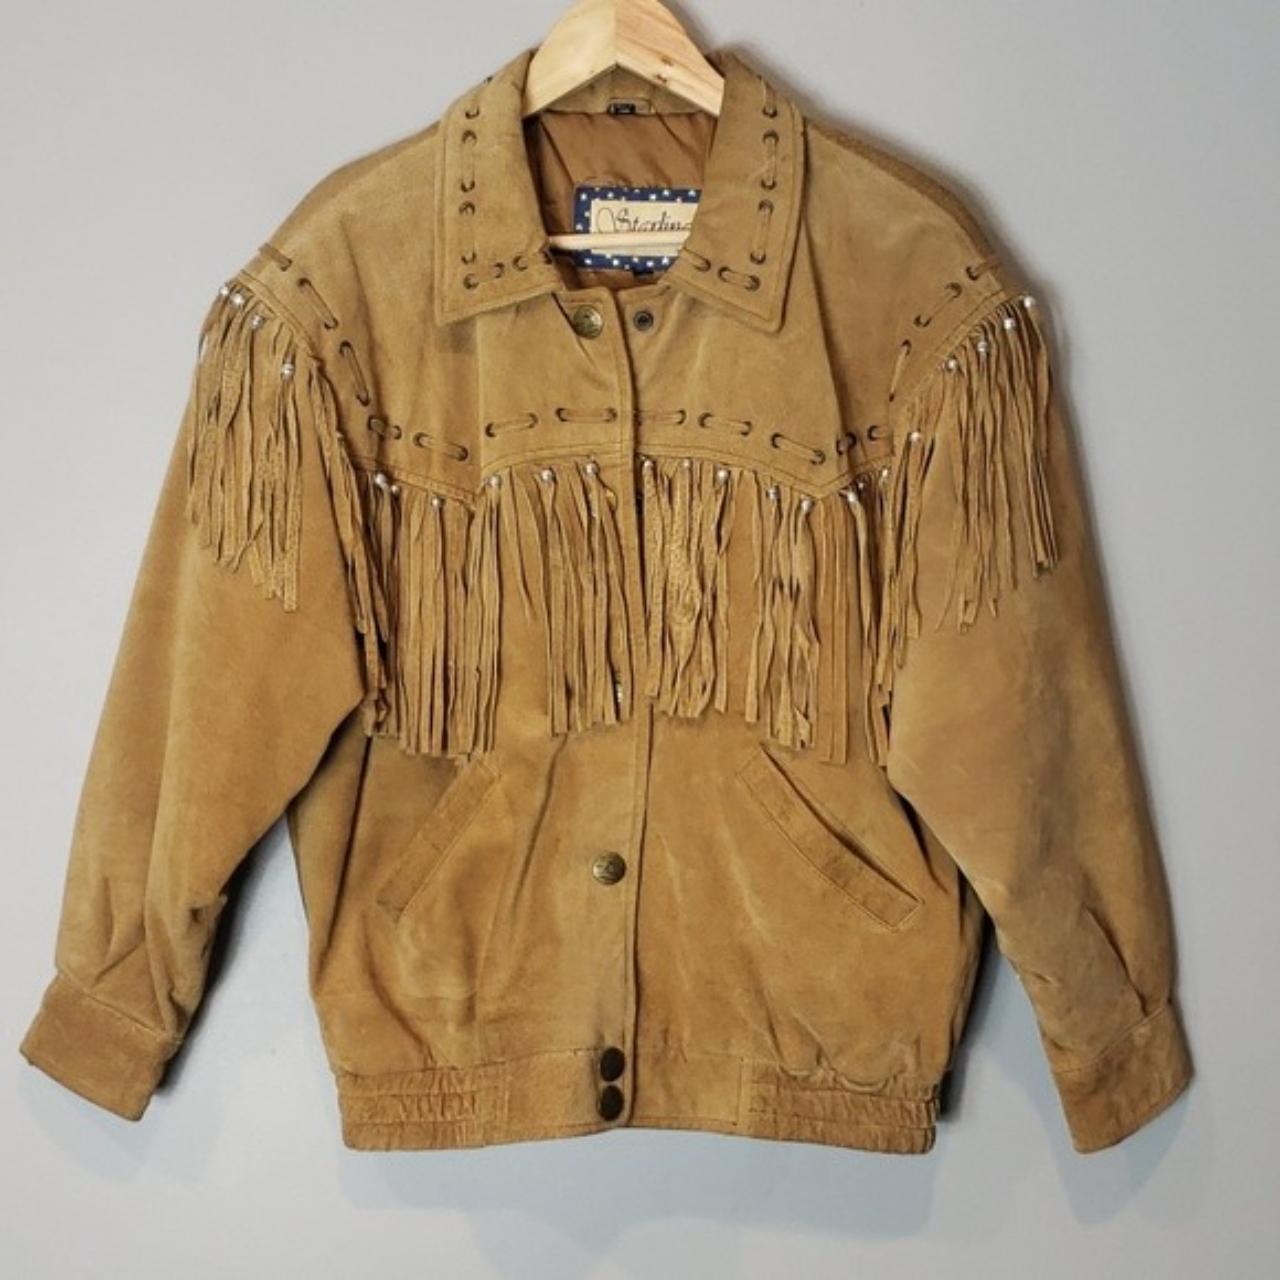 Western Leather Jacket Starling Vintage Fringe Brown... - Depop